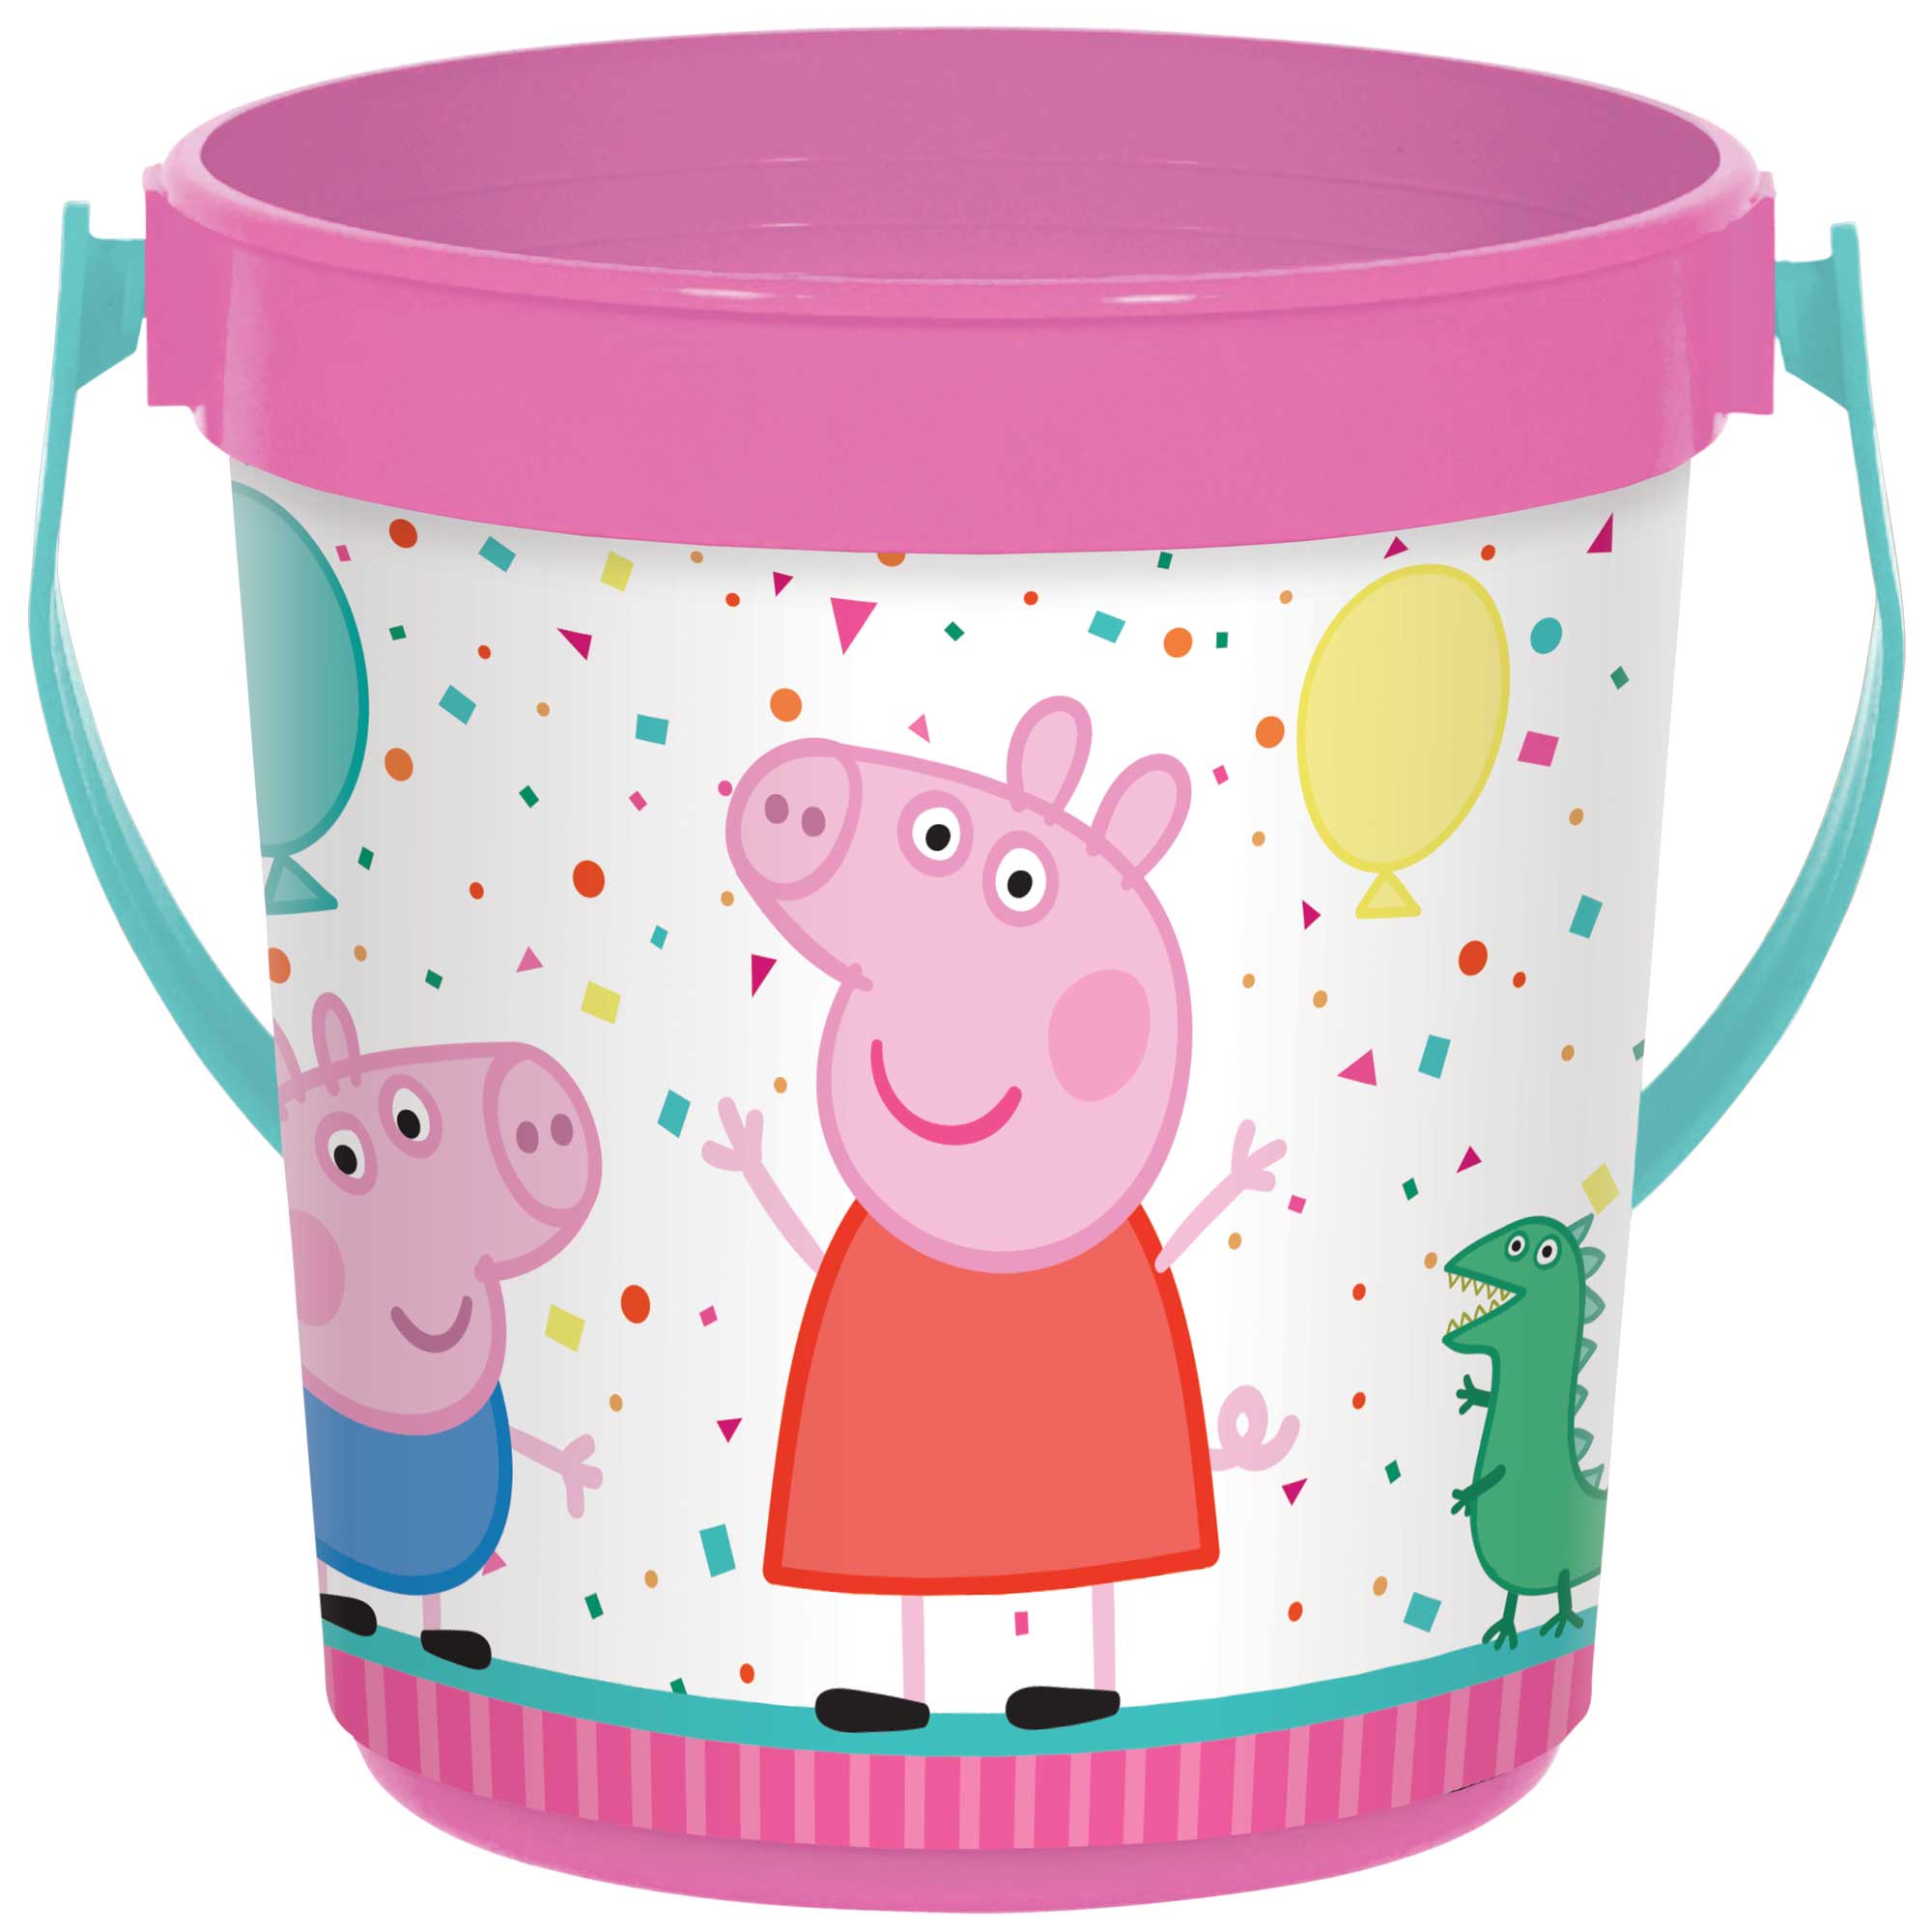 Peppa Pig Confetti Party Favor Container Plastic - 12x11cm Default Title